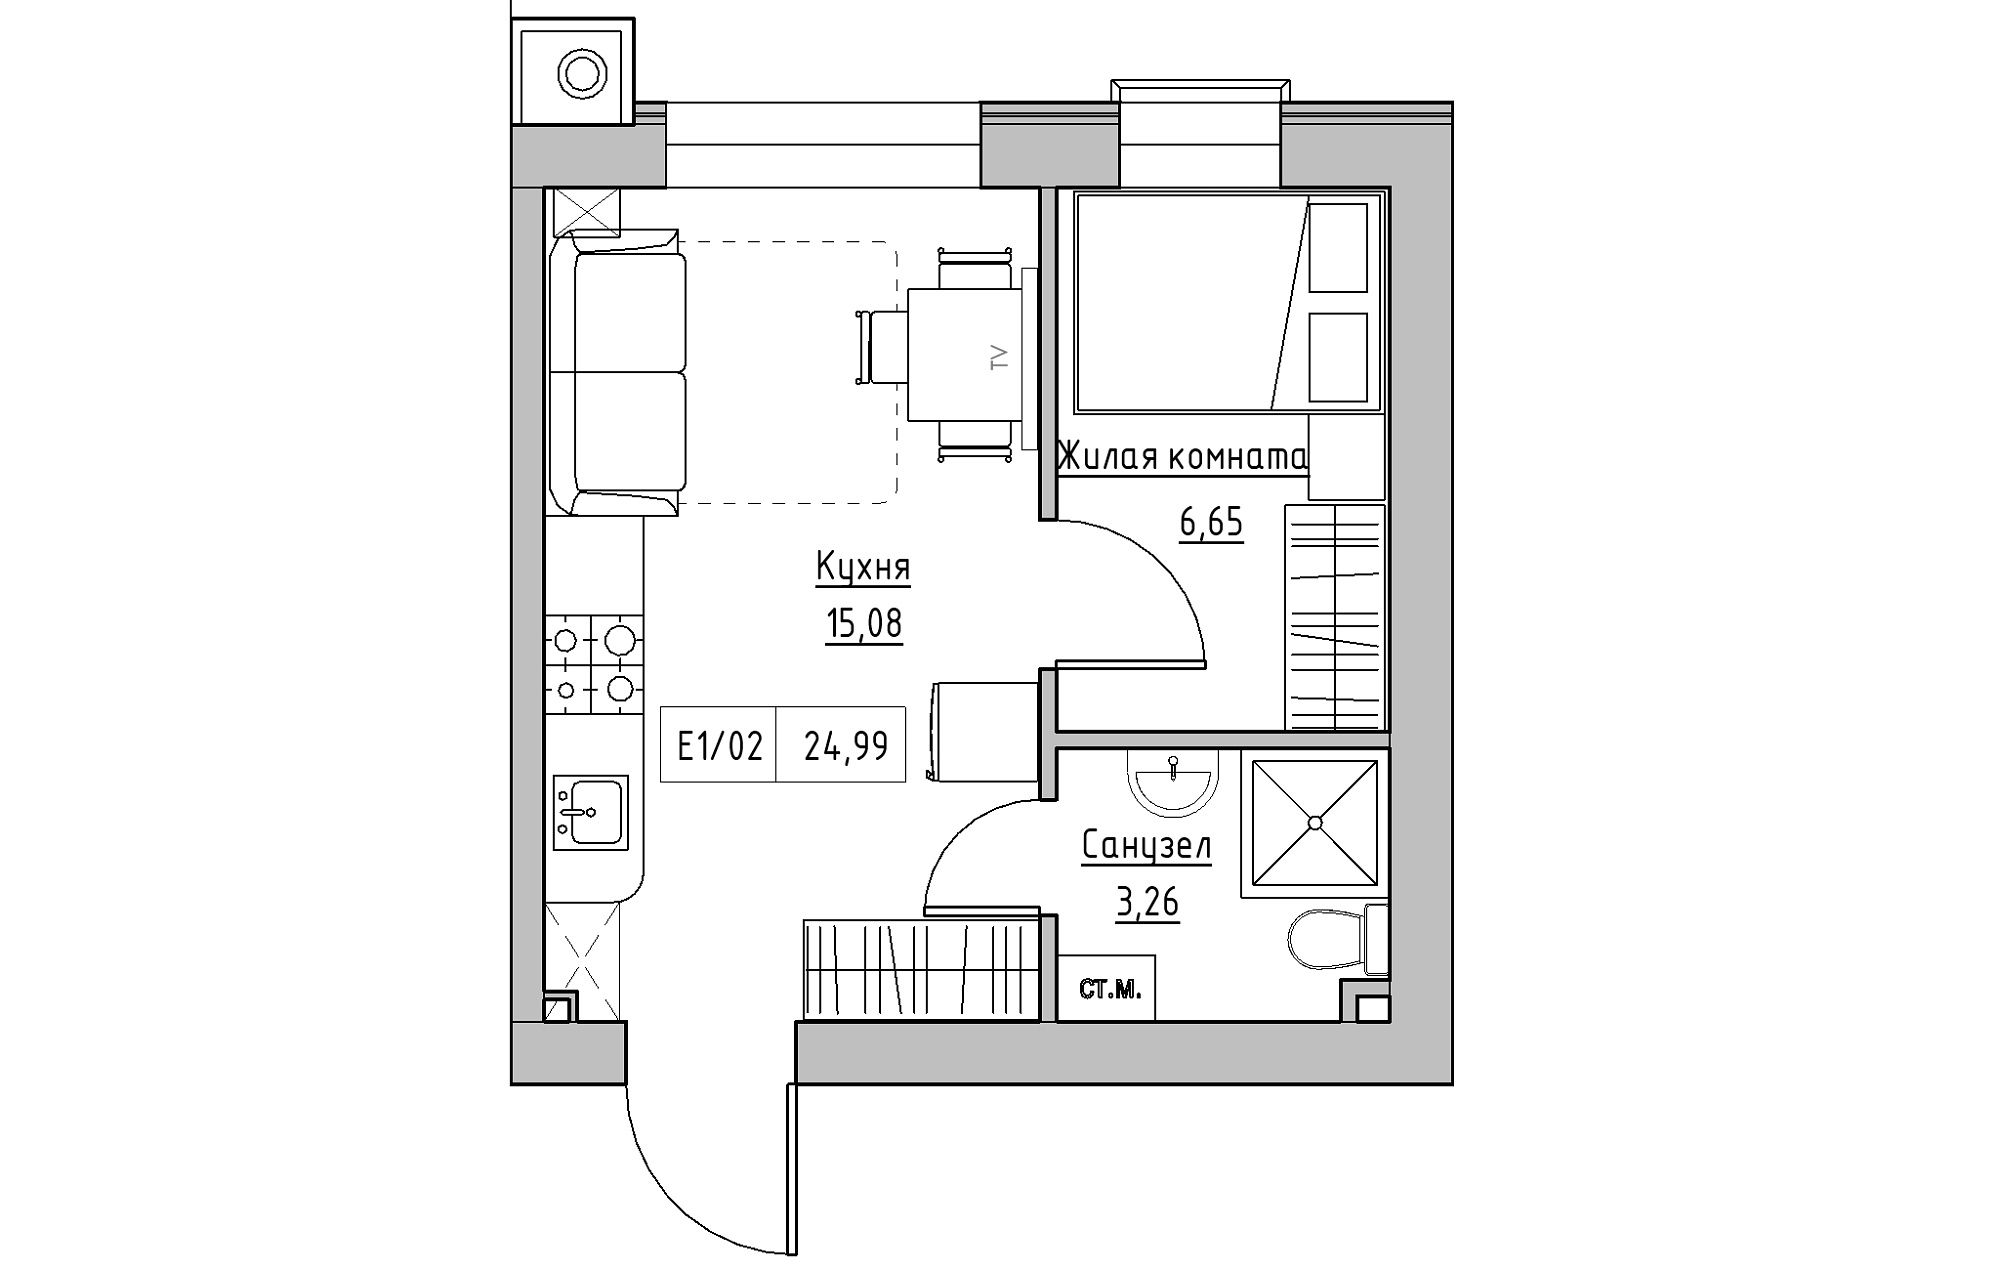 Планировка 1-к квартира площей 24.99м2, KS-013-04/0010.